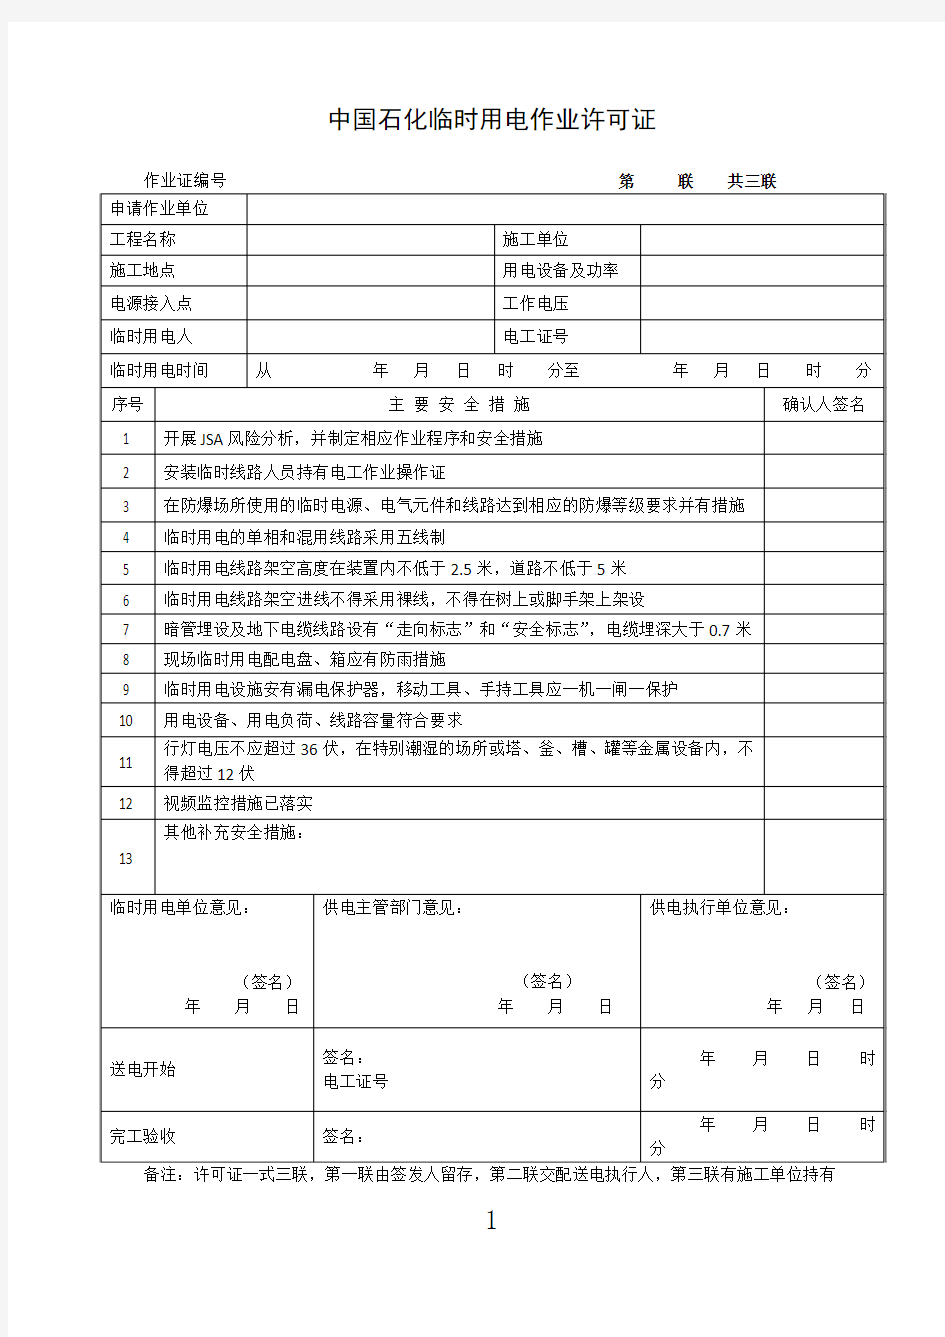 中国石化临时用电作业许可证2016版